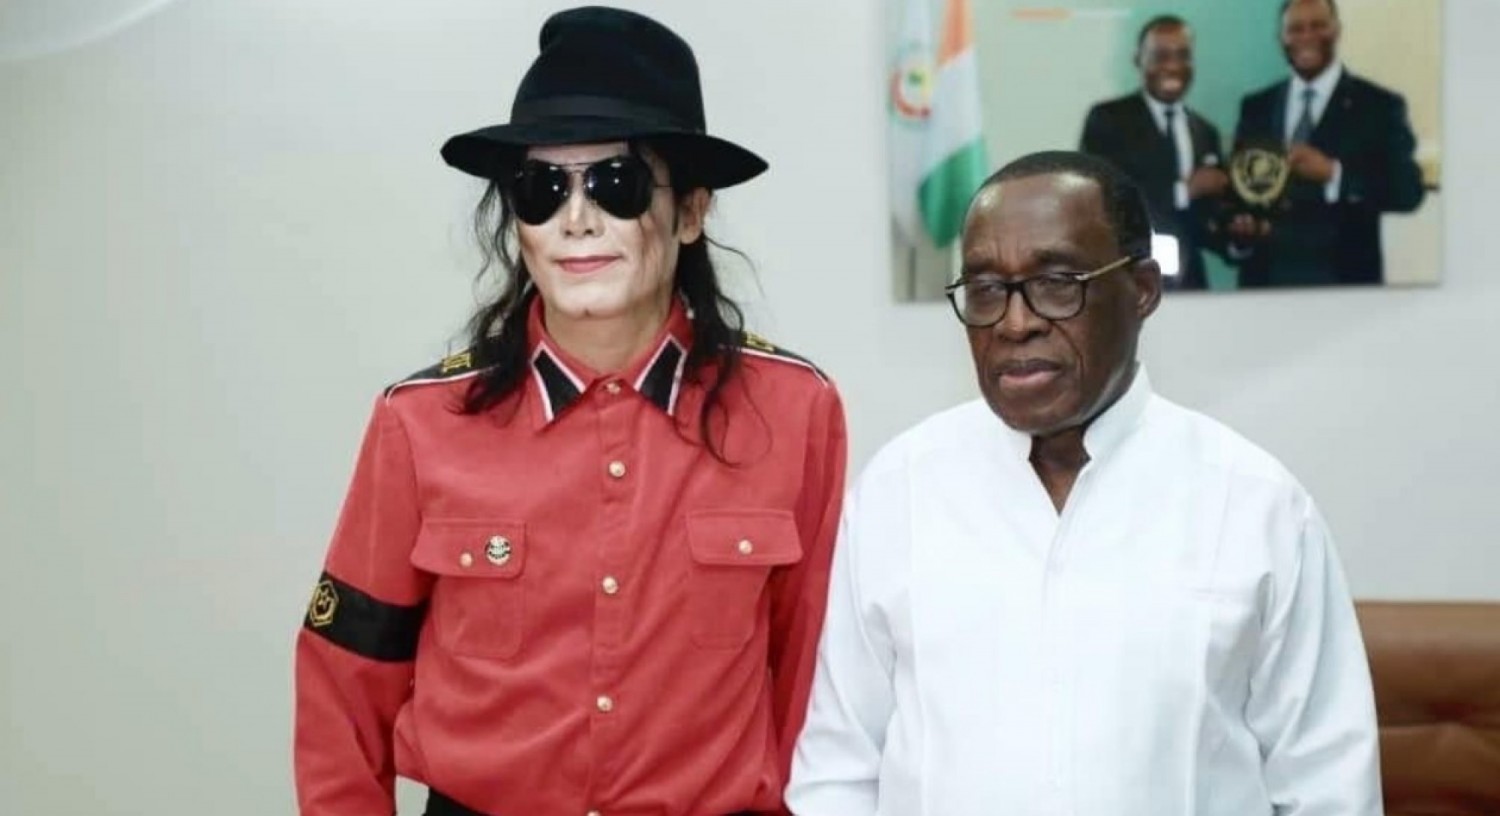 Côte d'Ivoire : Hommage à Mickael Jackson, les frères Jackson bientôt à Abidjan pour un concert, un mémorial dédié à la Star de la pop music à Krindjabo